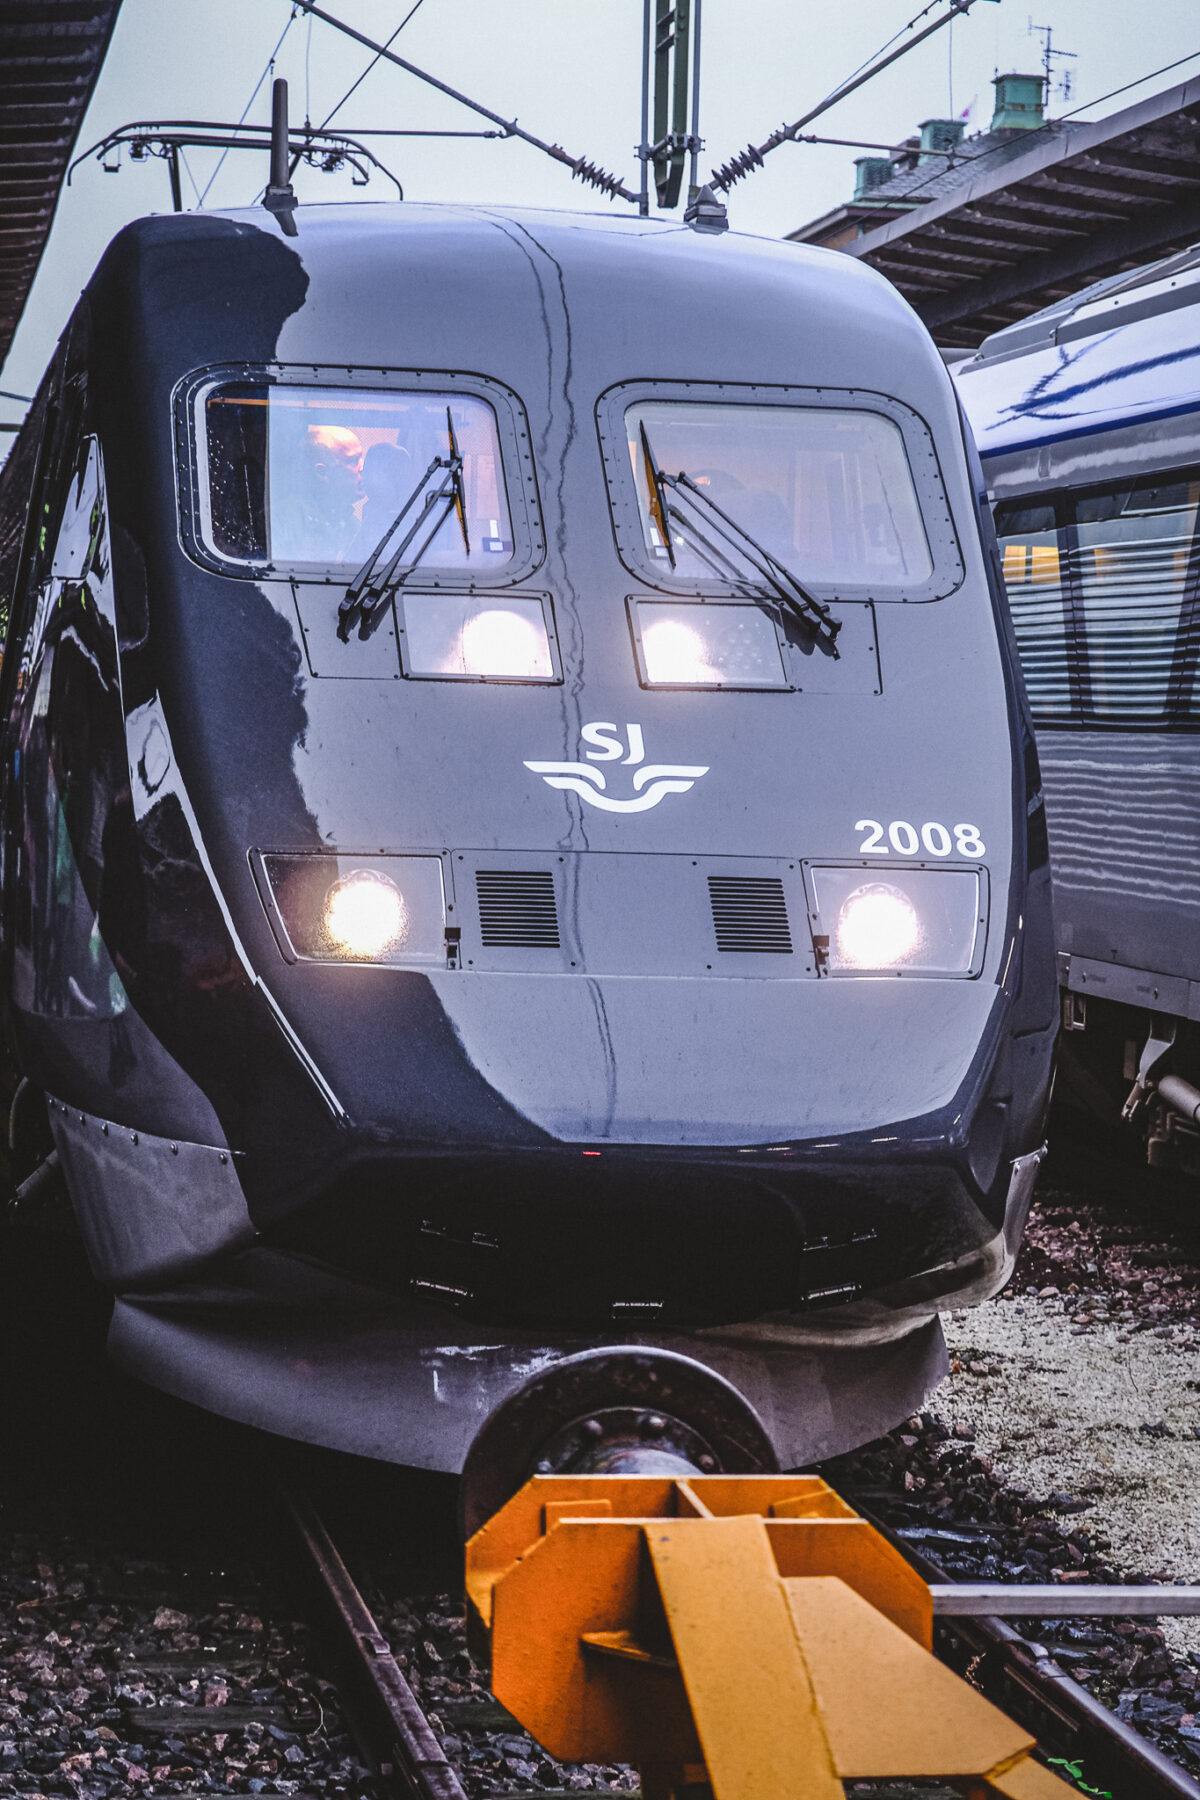 SJ åka tåg nya x 2000